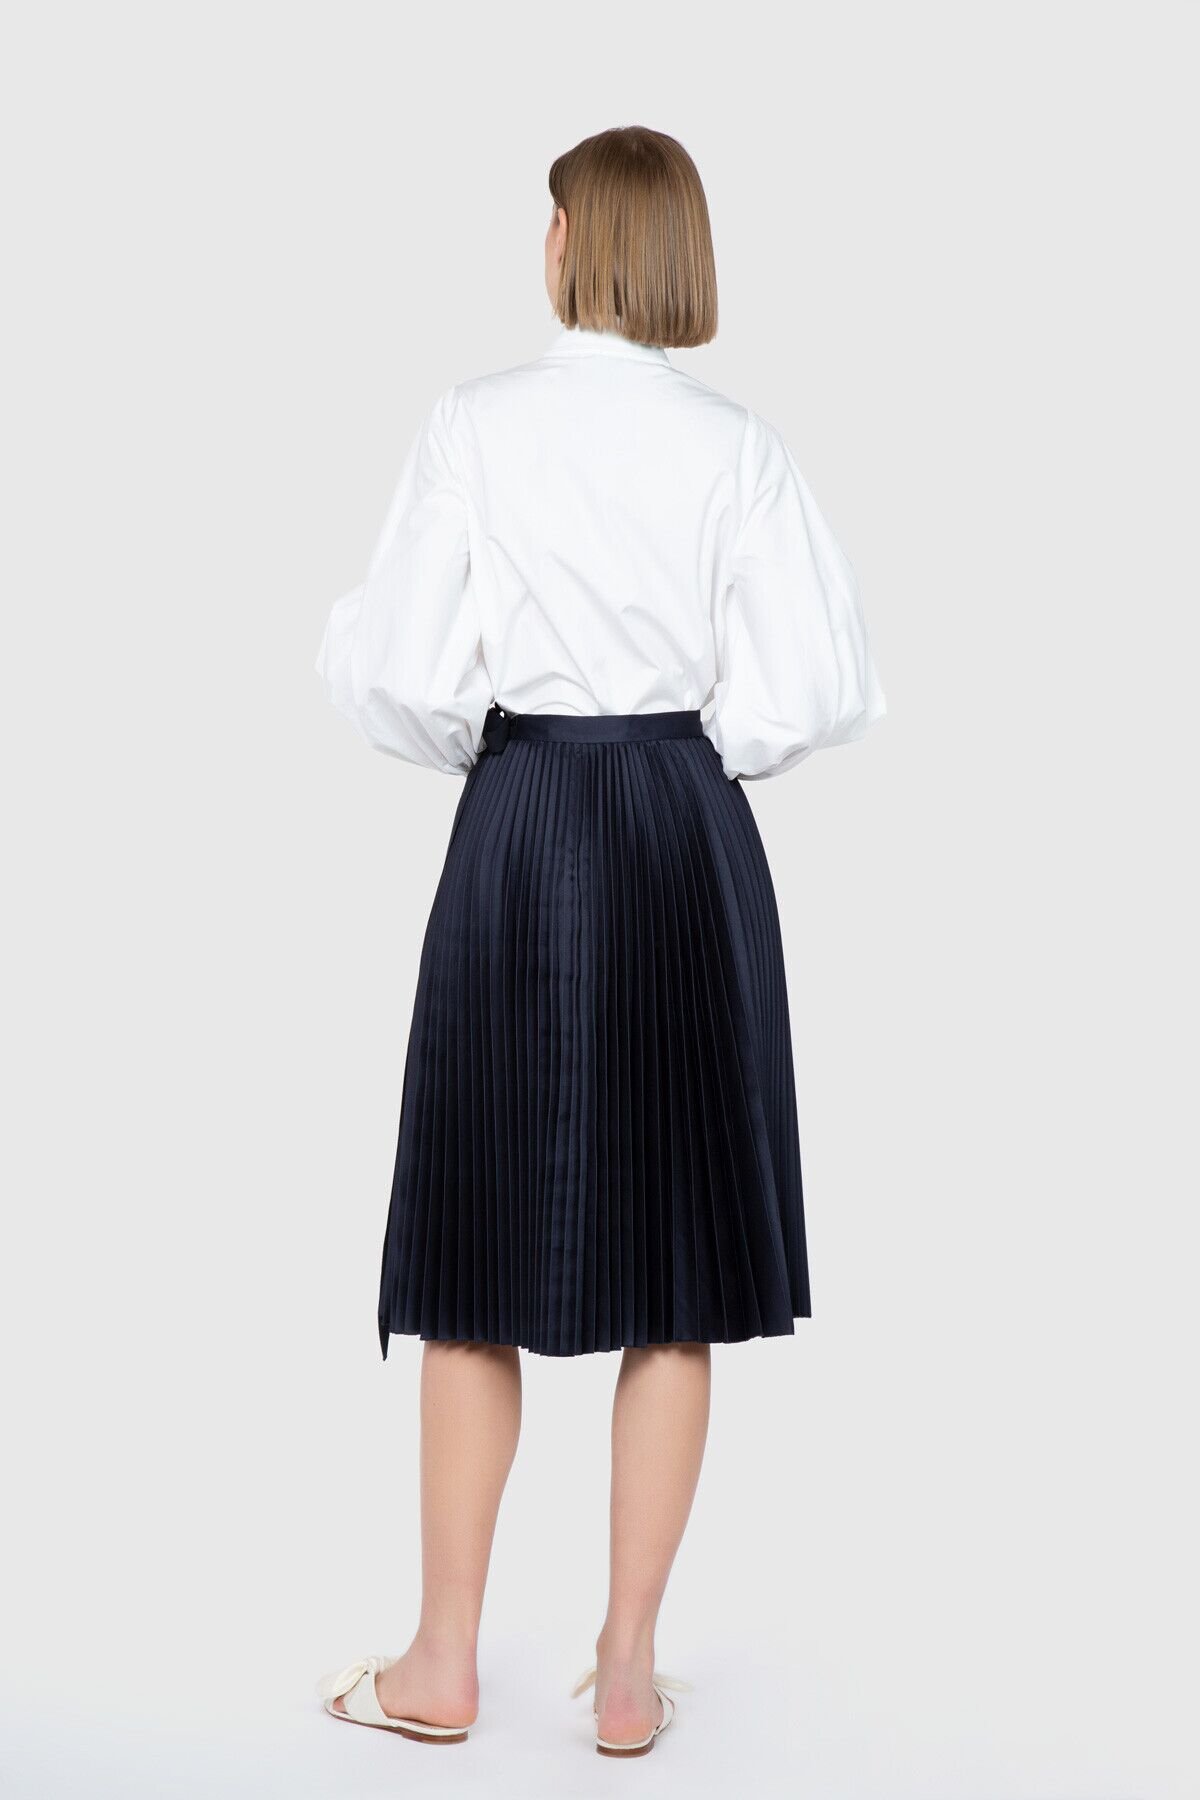 Pleat Knee Length Navy Blue Skirt